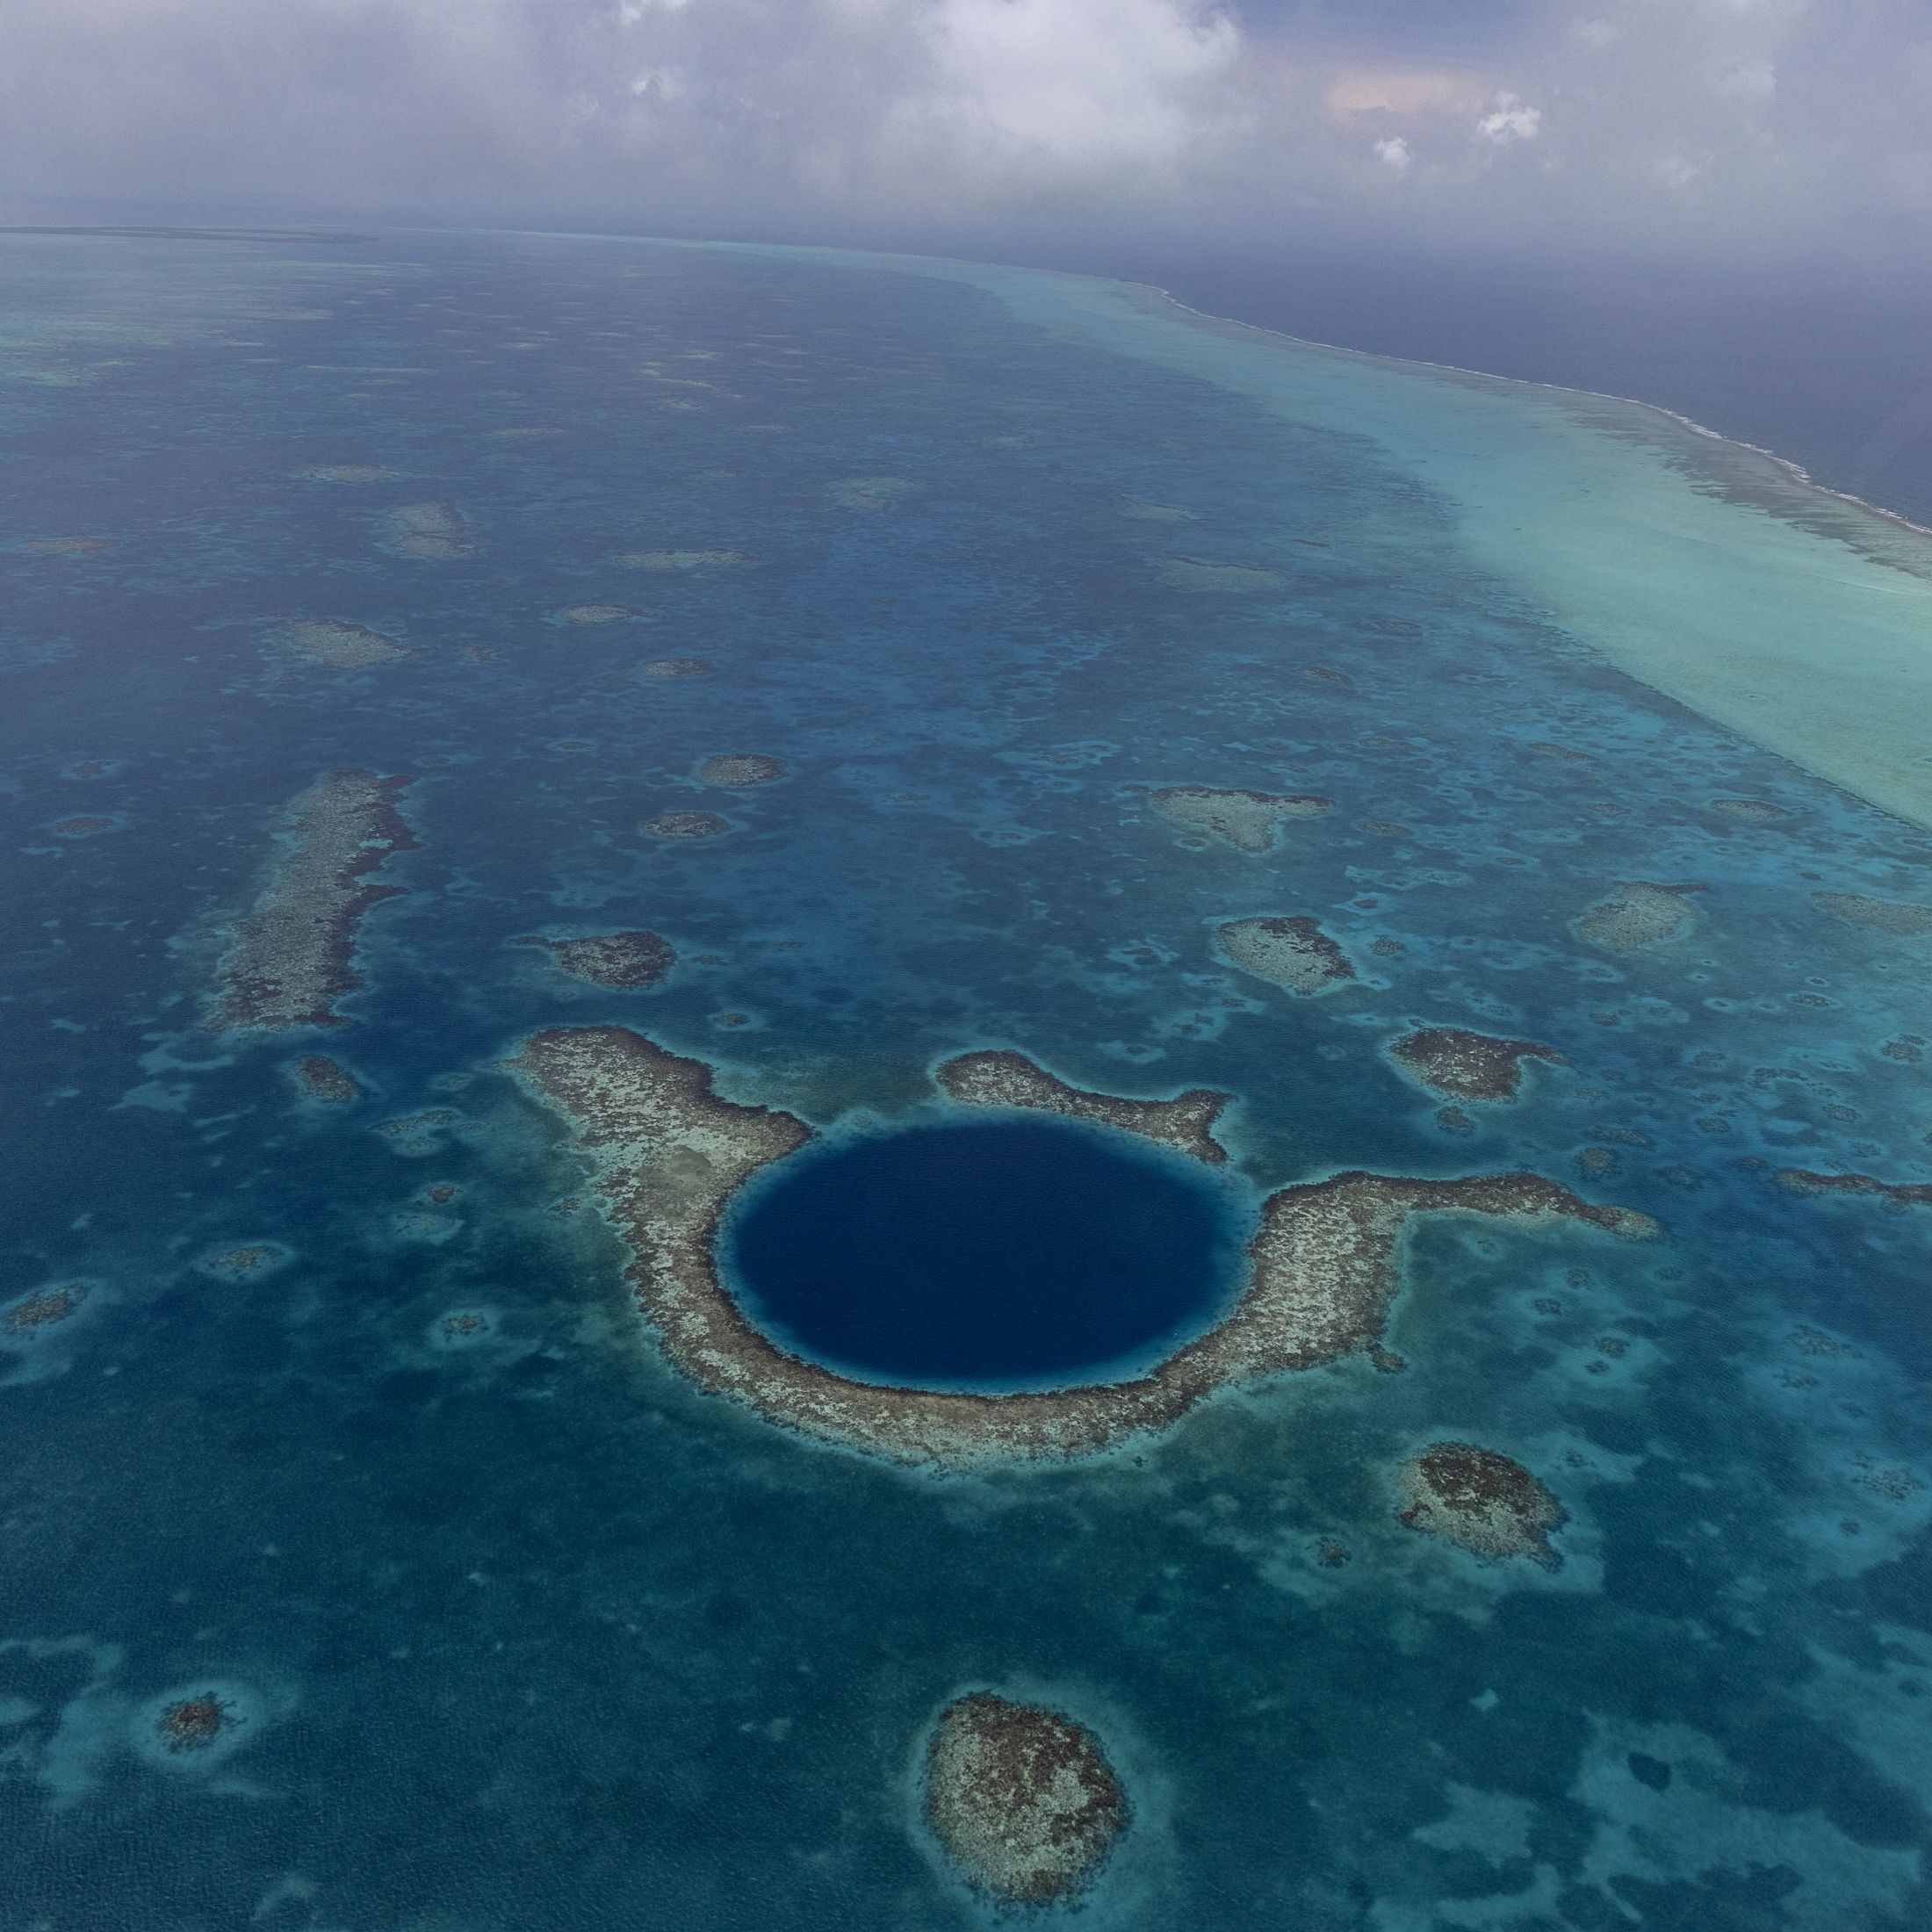 Выберите самый большой океан. Белизский Барьерный риф и большая голубая дыра. Белизский Барьерный риф Белиз. Great Blue hole, Белиз. Марианская впадина Белиз.